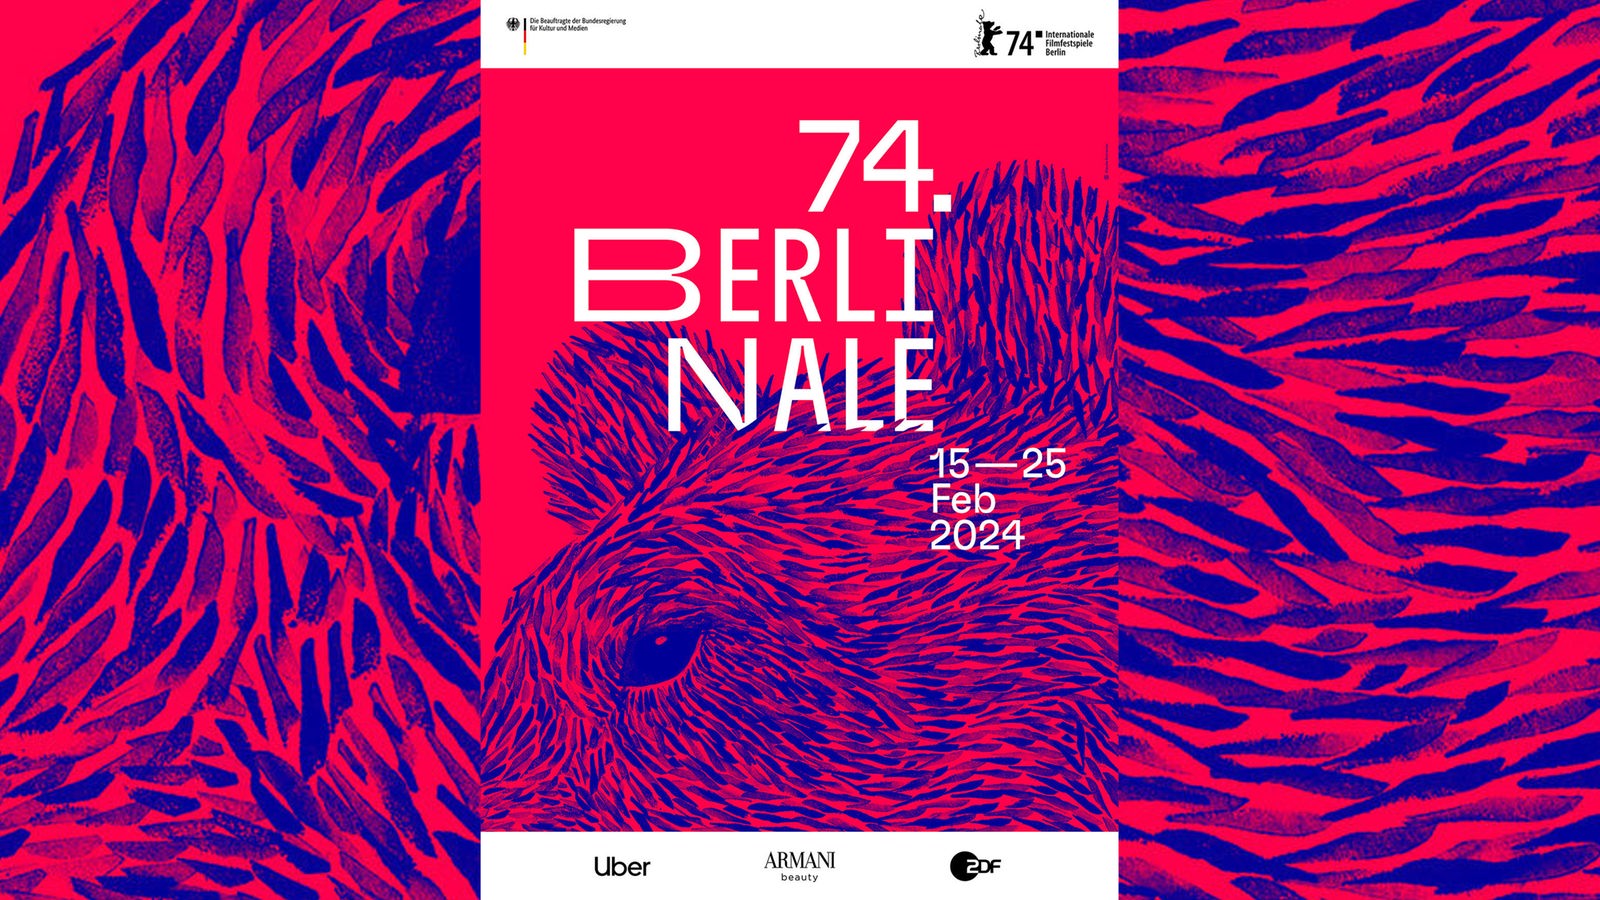 Berlinale veröffentlicht Plakatmotiv für 2024 Kulturnachrichten